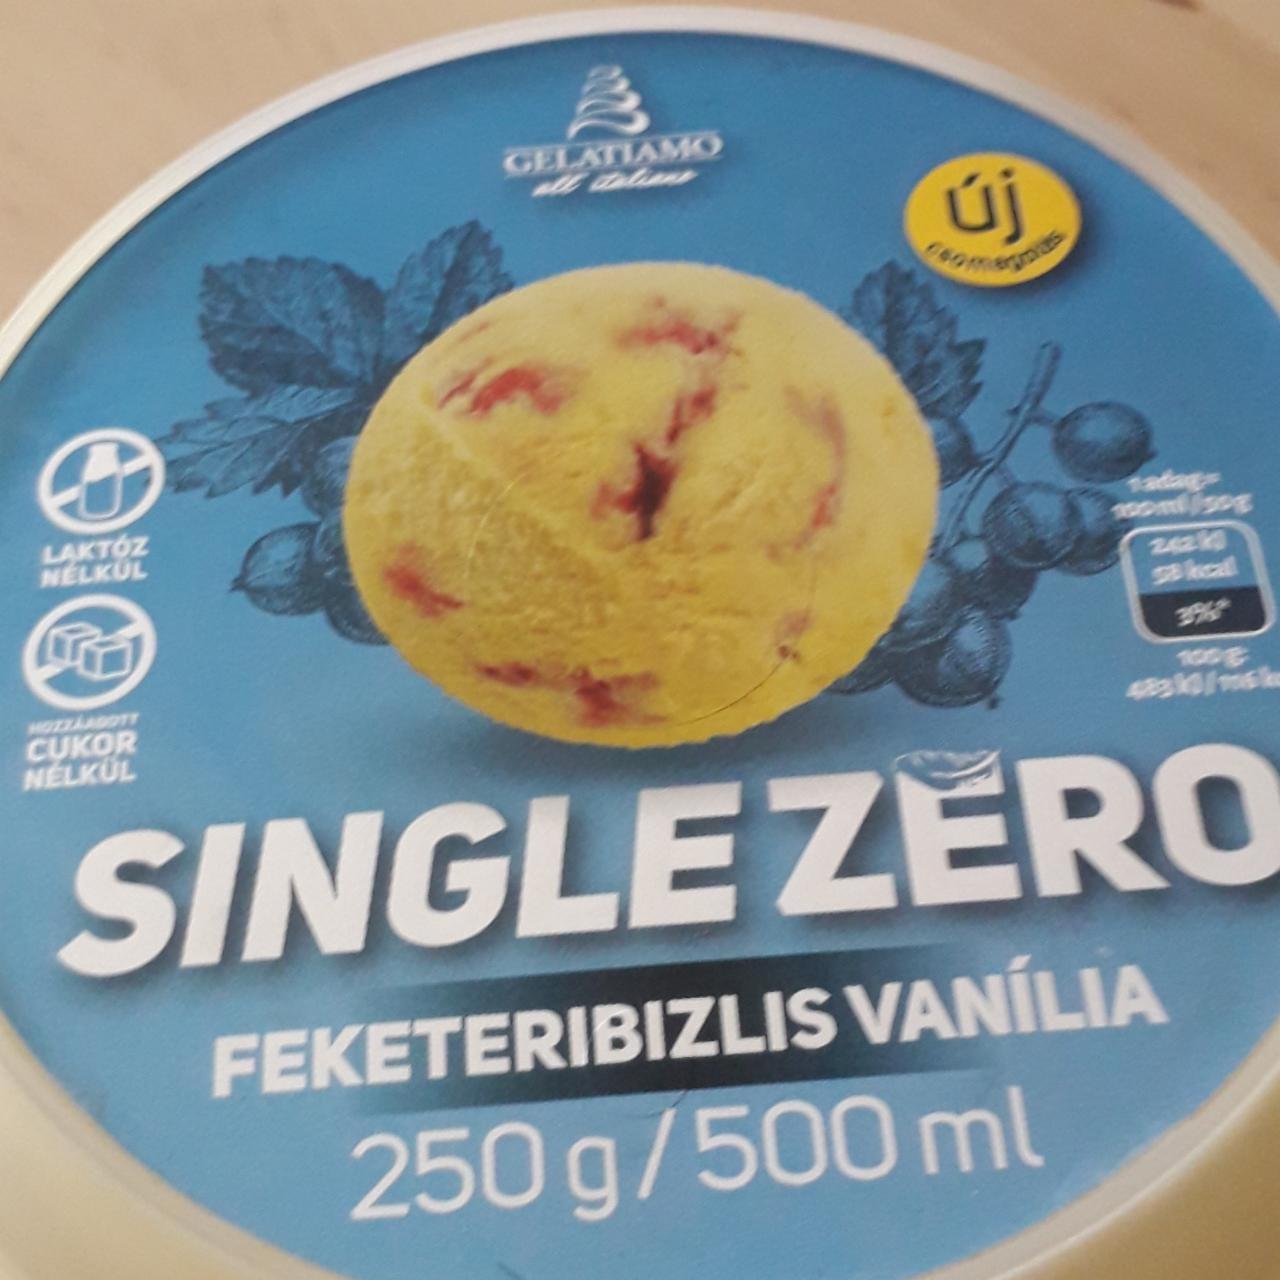 Képek - Single zero laktózmentes feketeribizlis vanília jégkrém Gelatiamo